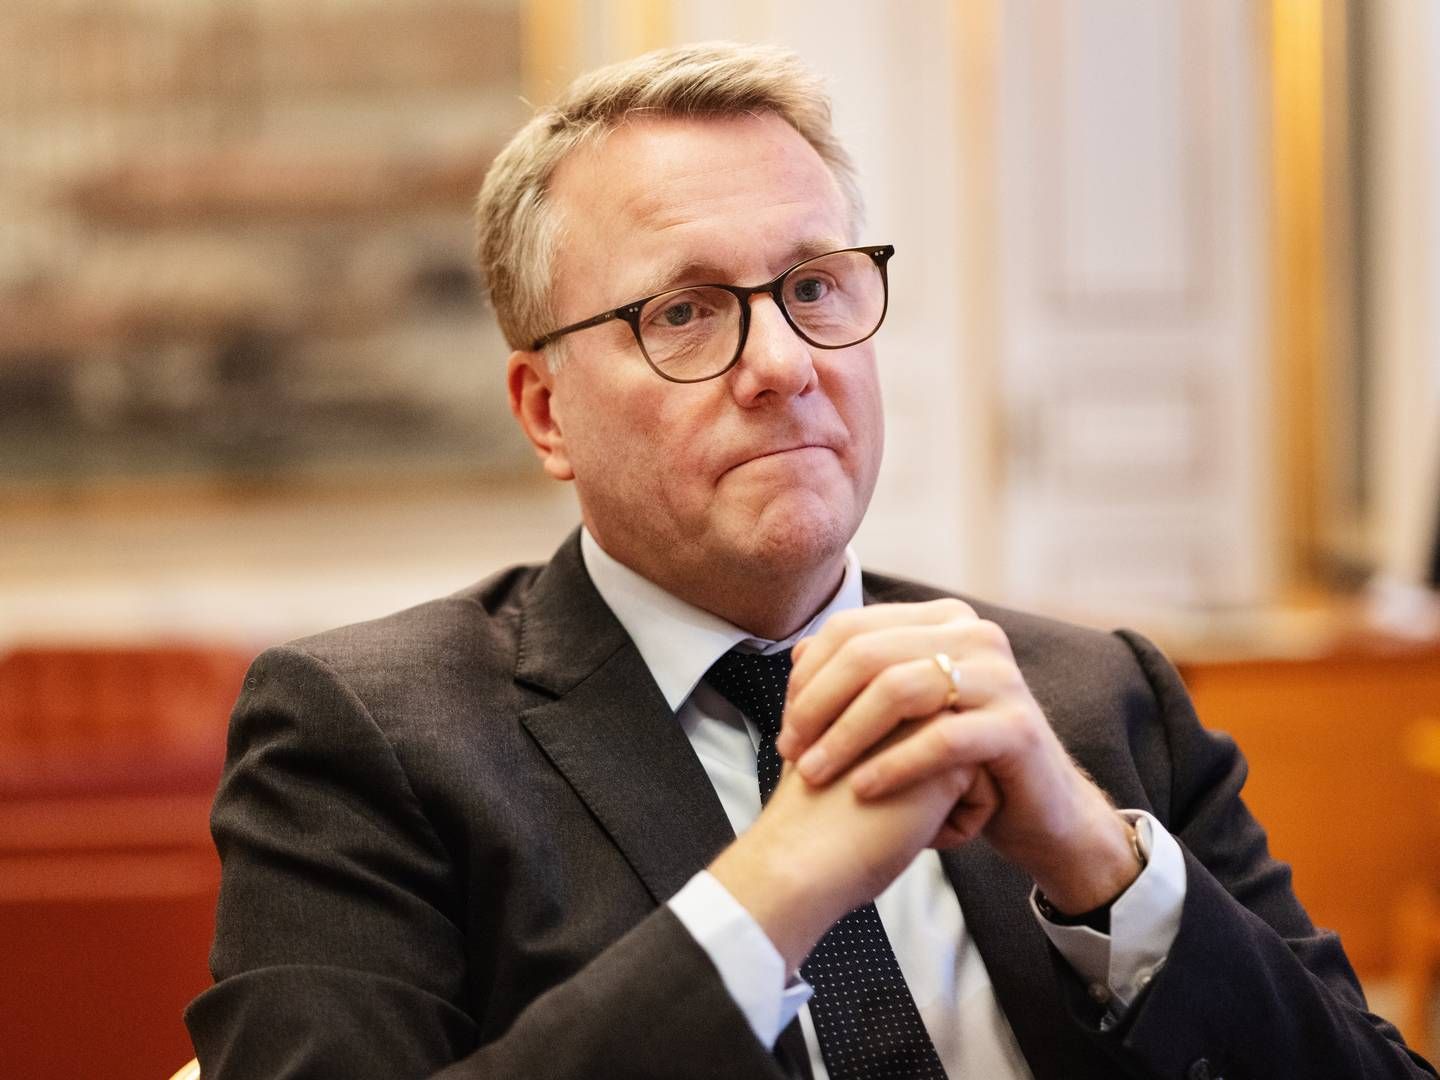 Erhvervsminister Morten Bødskov (S) siger i et interview med Berlingske, at "de sociale medier ikke er et slaraffenland", men er reguleret af markedsføringsloven. | Foto: Gregers Tycho/Ritzau Scanpix